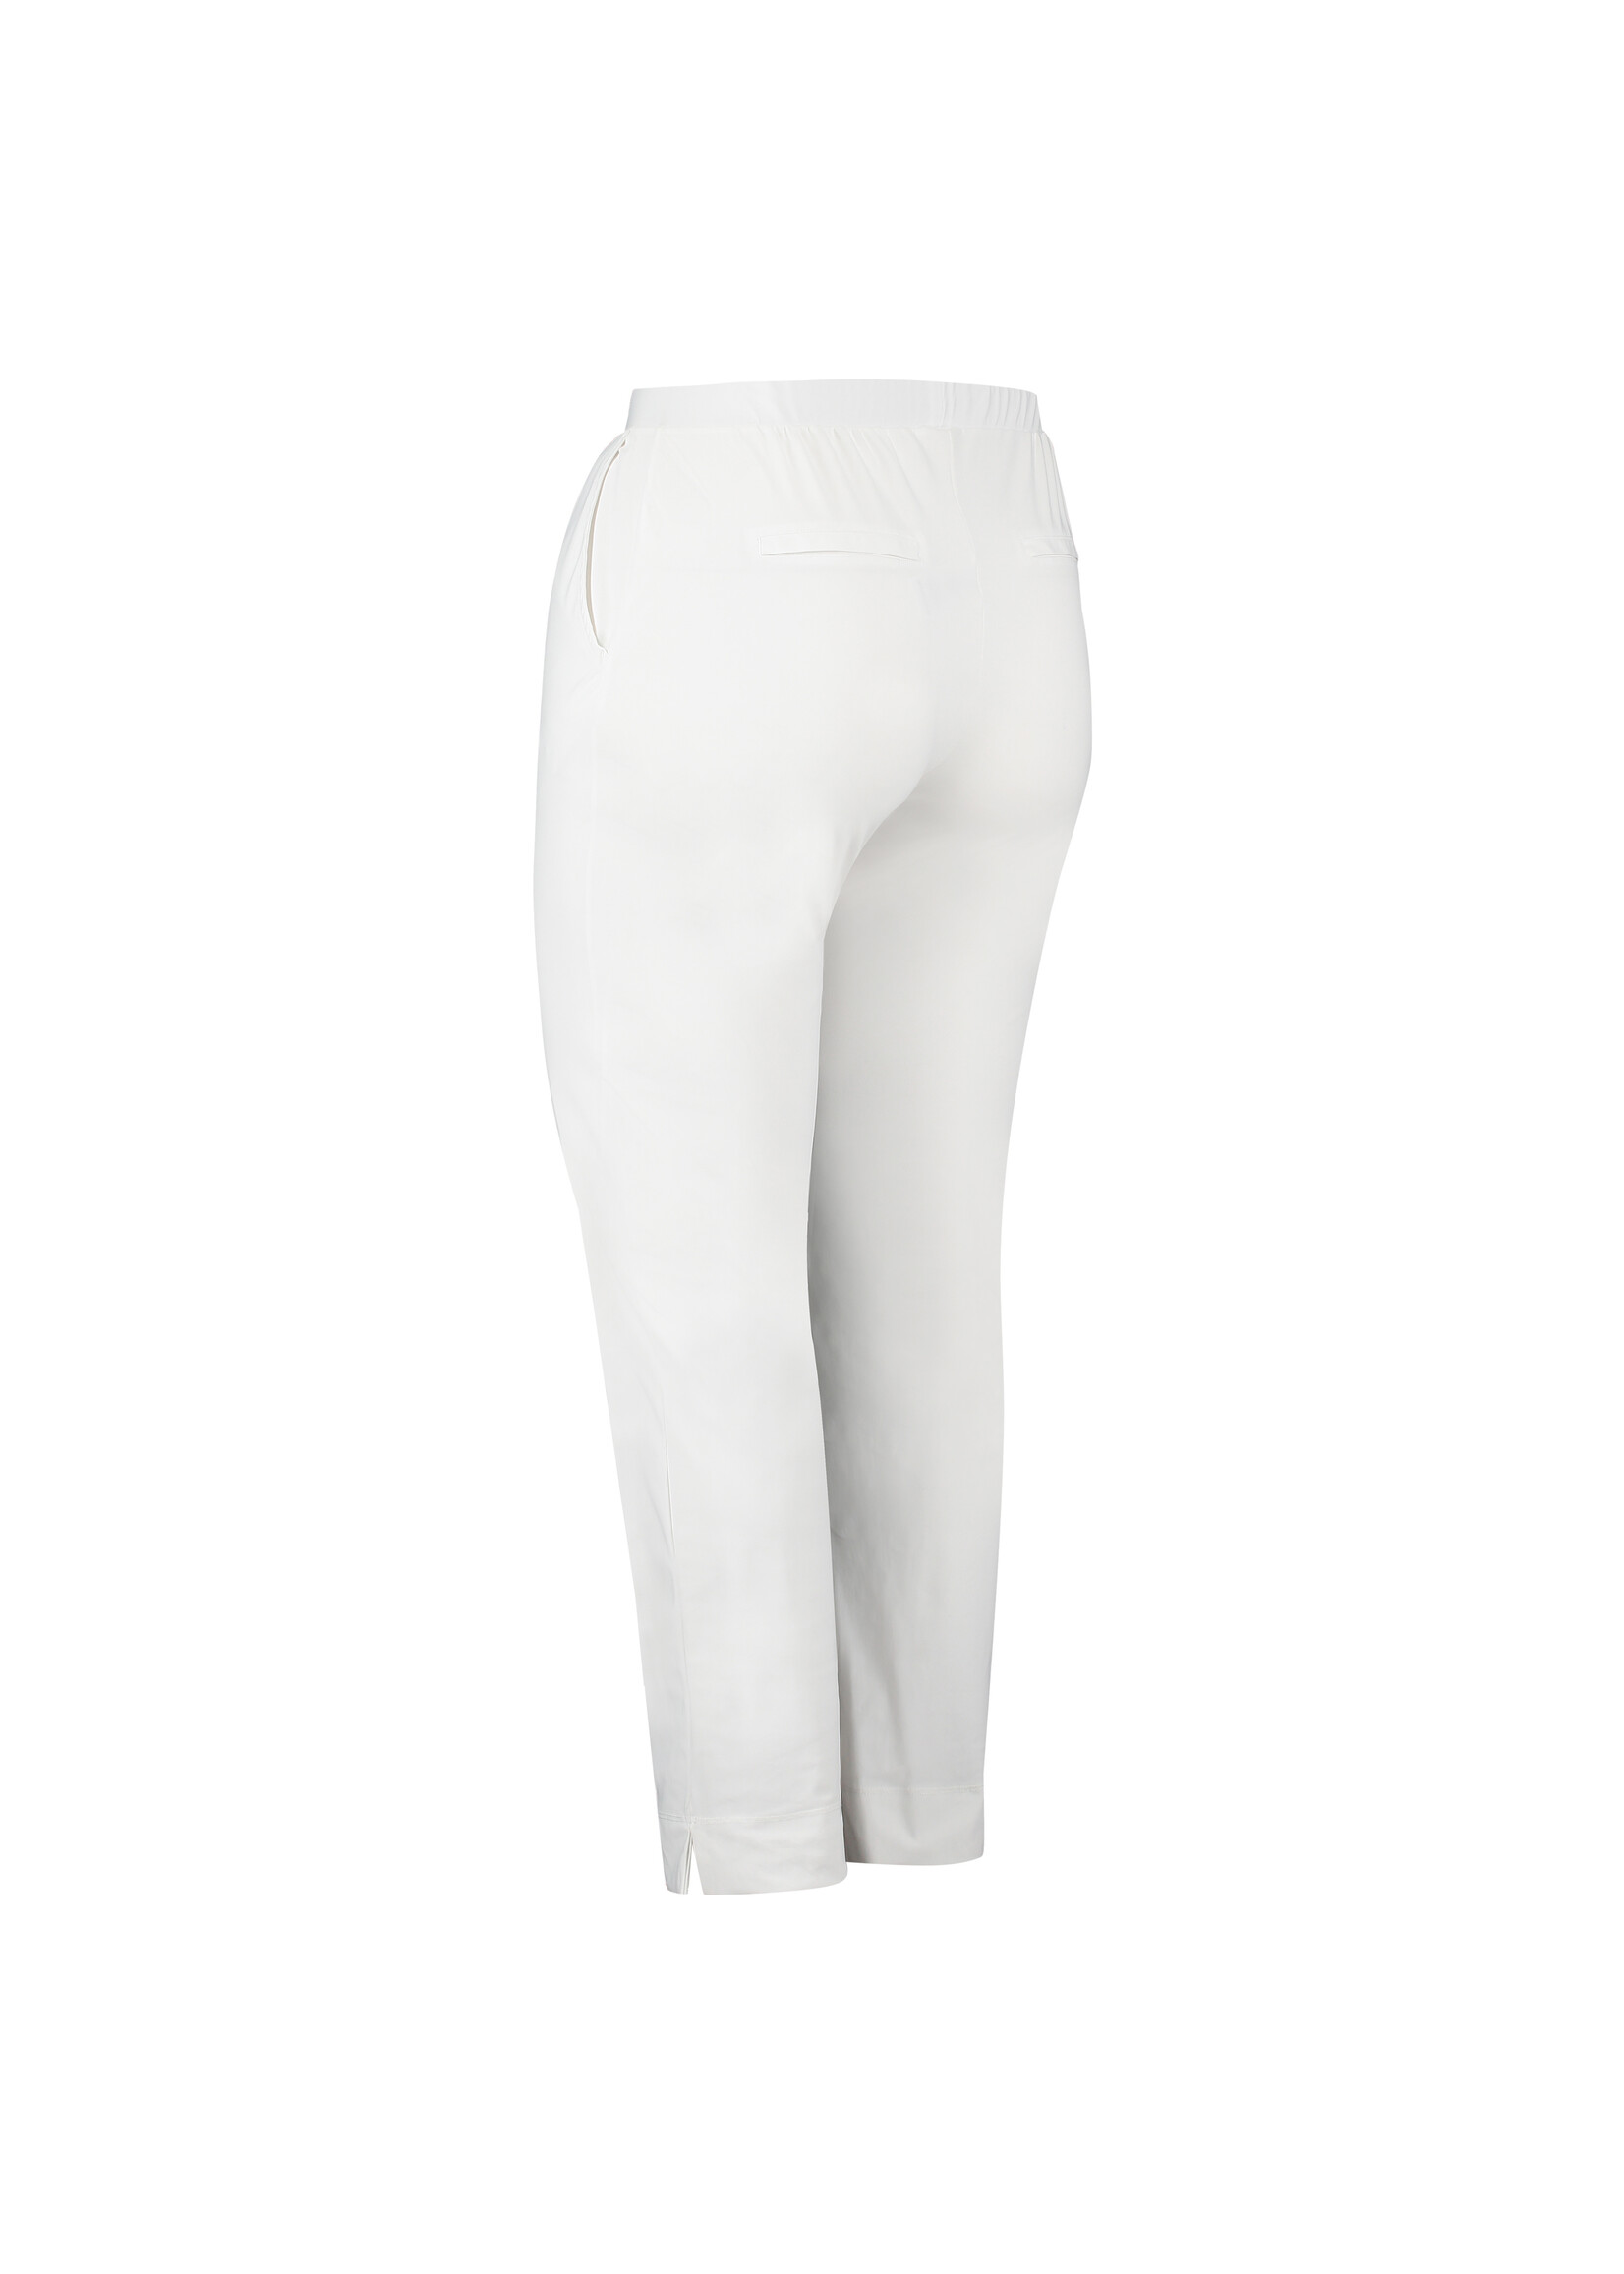 PlusBasics Pants 7/8 White